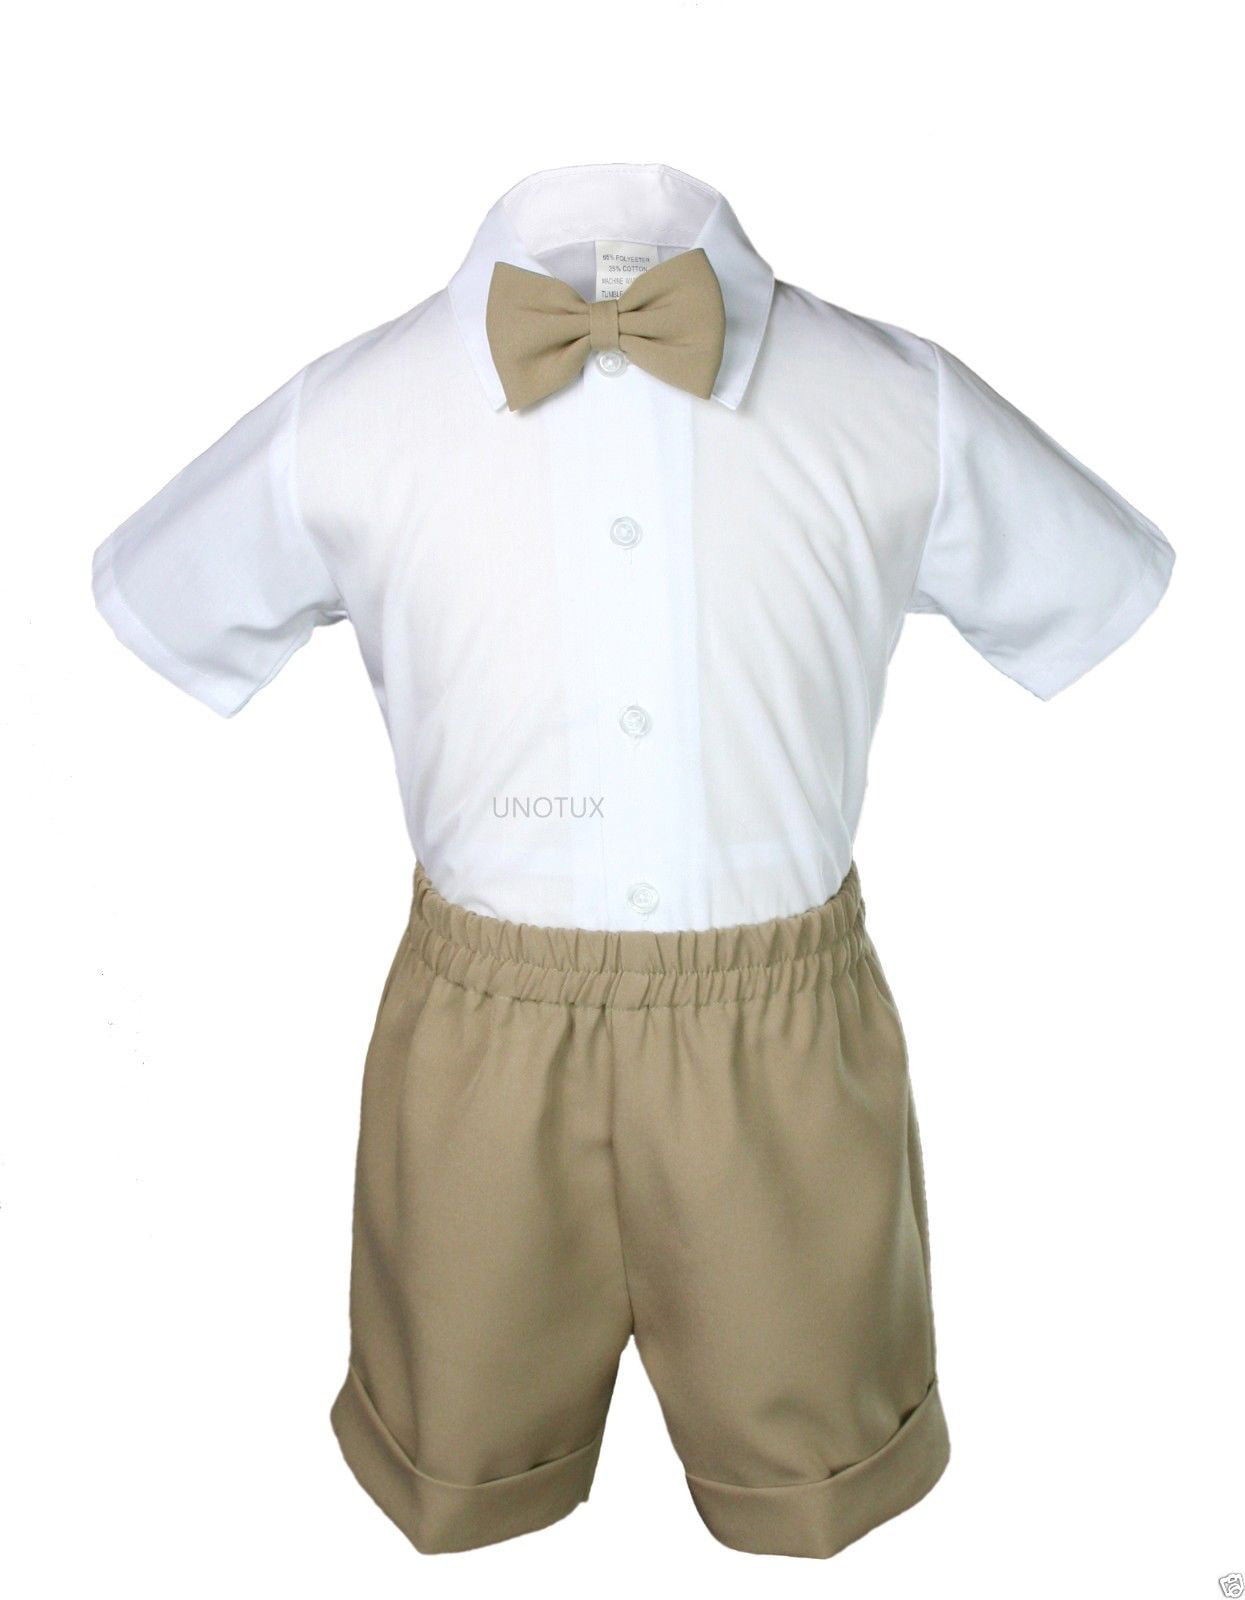 Khaki New Boy Infant & Toddler Eton Formal  Vest Shorts Suit  S M L XL 2T 3T 4T 